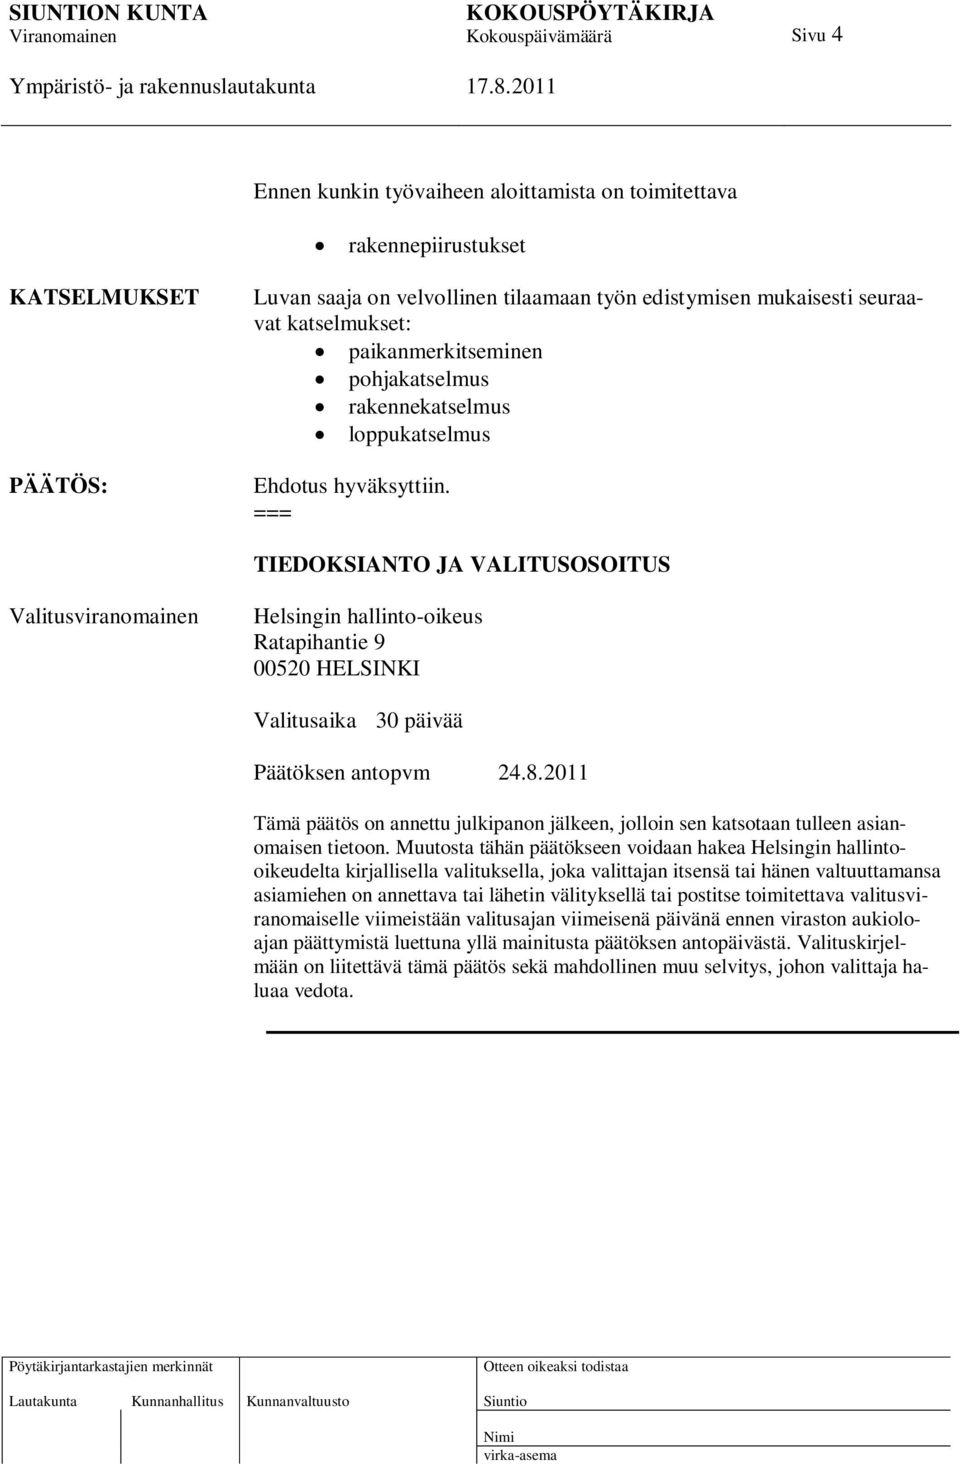 TIEDOKSIANTO JA VALITUSOSOITUS Valitusviranomainen Helsingin hallinto-oikeus Ratapihantie 9 00520 HELSINKI Valitusaika 30 päivää Päätöksen antopvm 24.8.